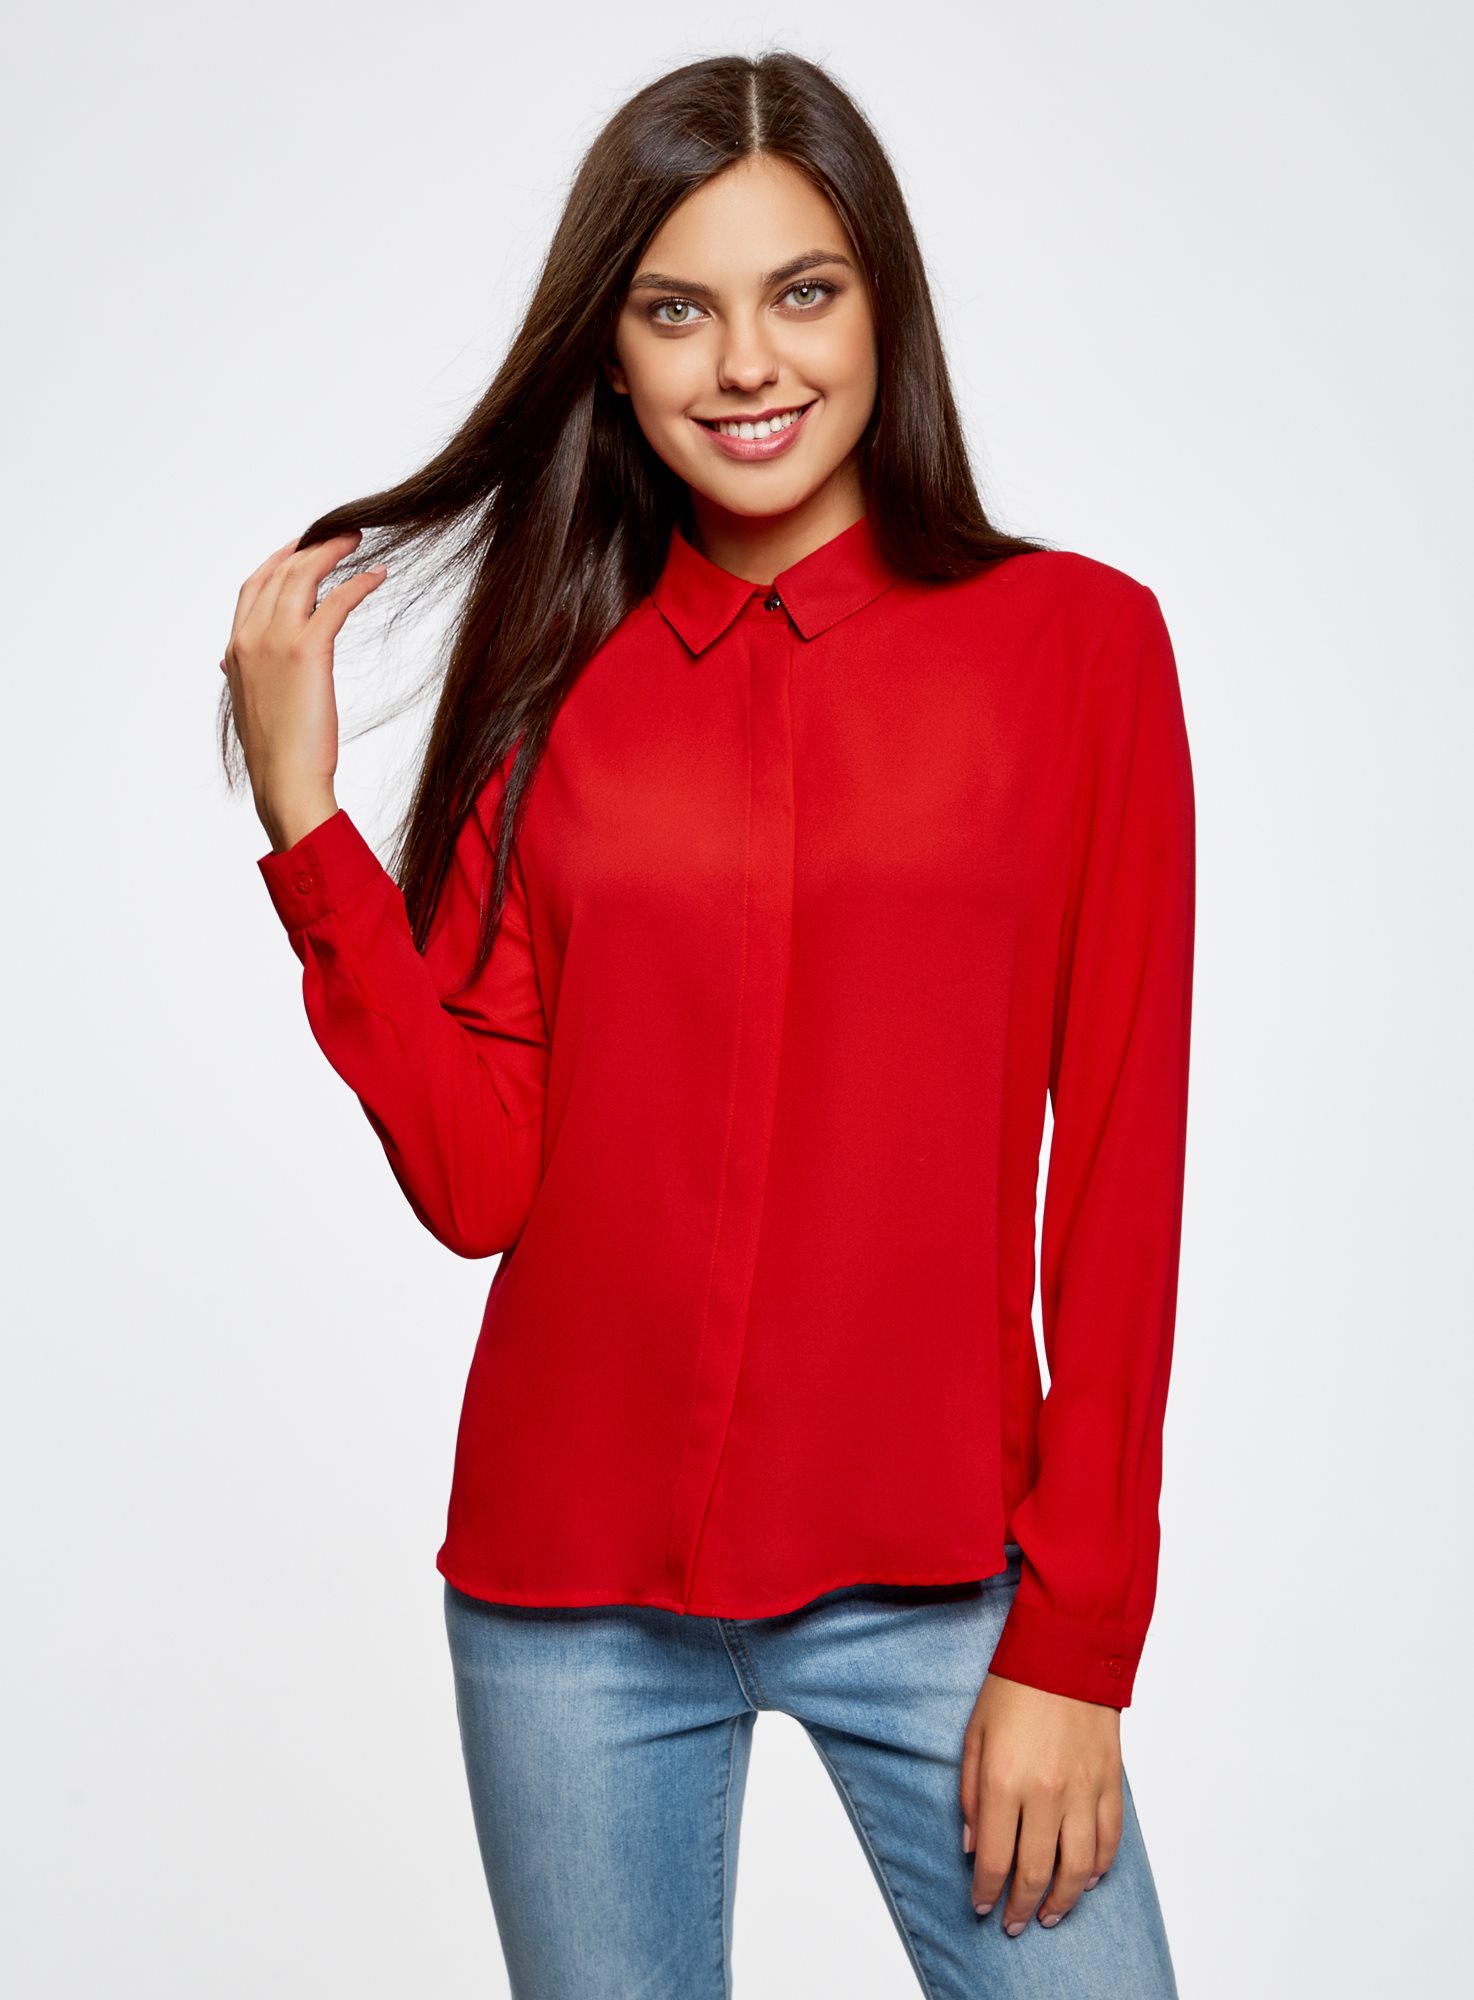 Блузки красного цвета. Oodji блузка красная. Красная блуза. Красная кофта. Красная кофта женская.